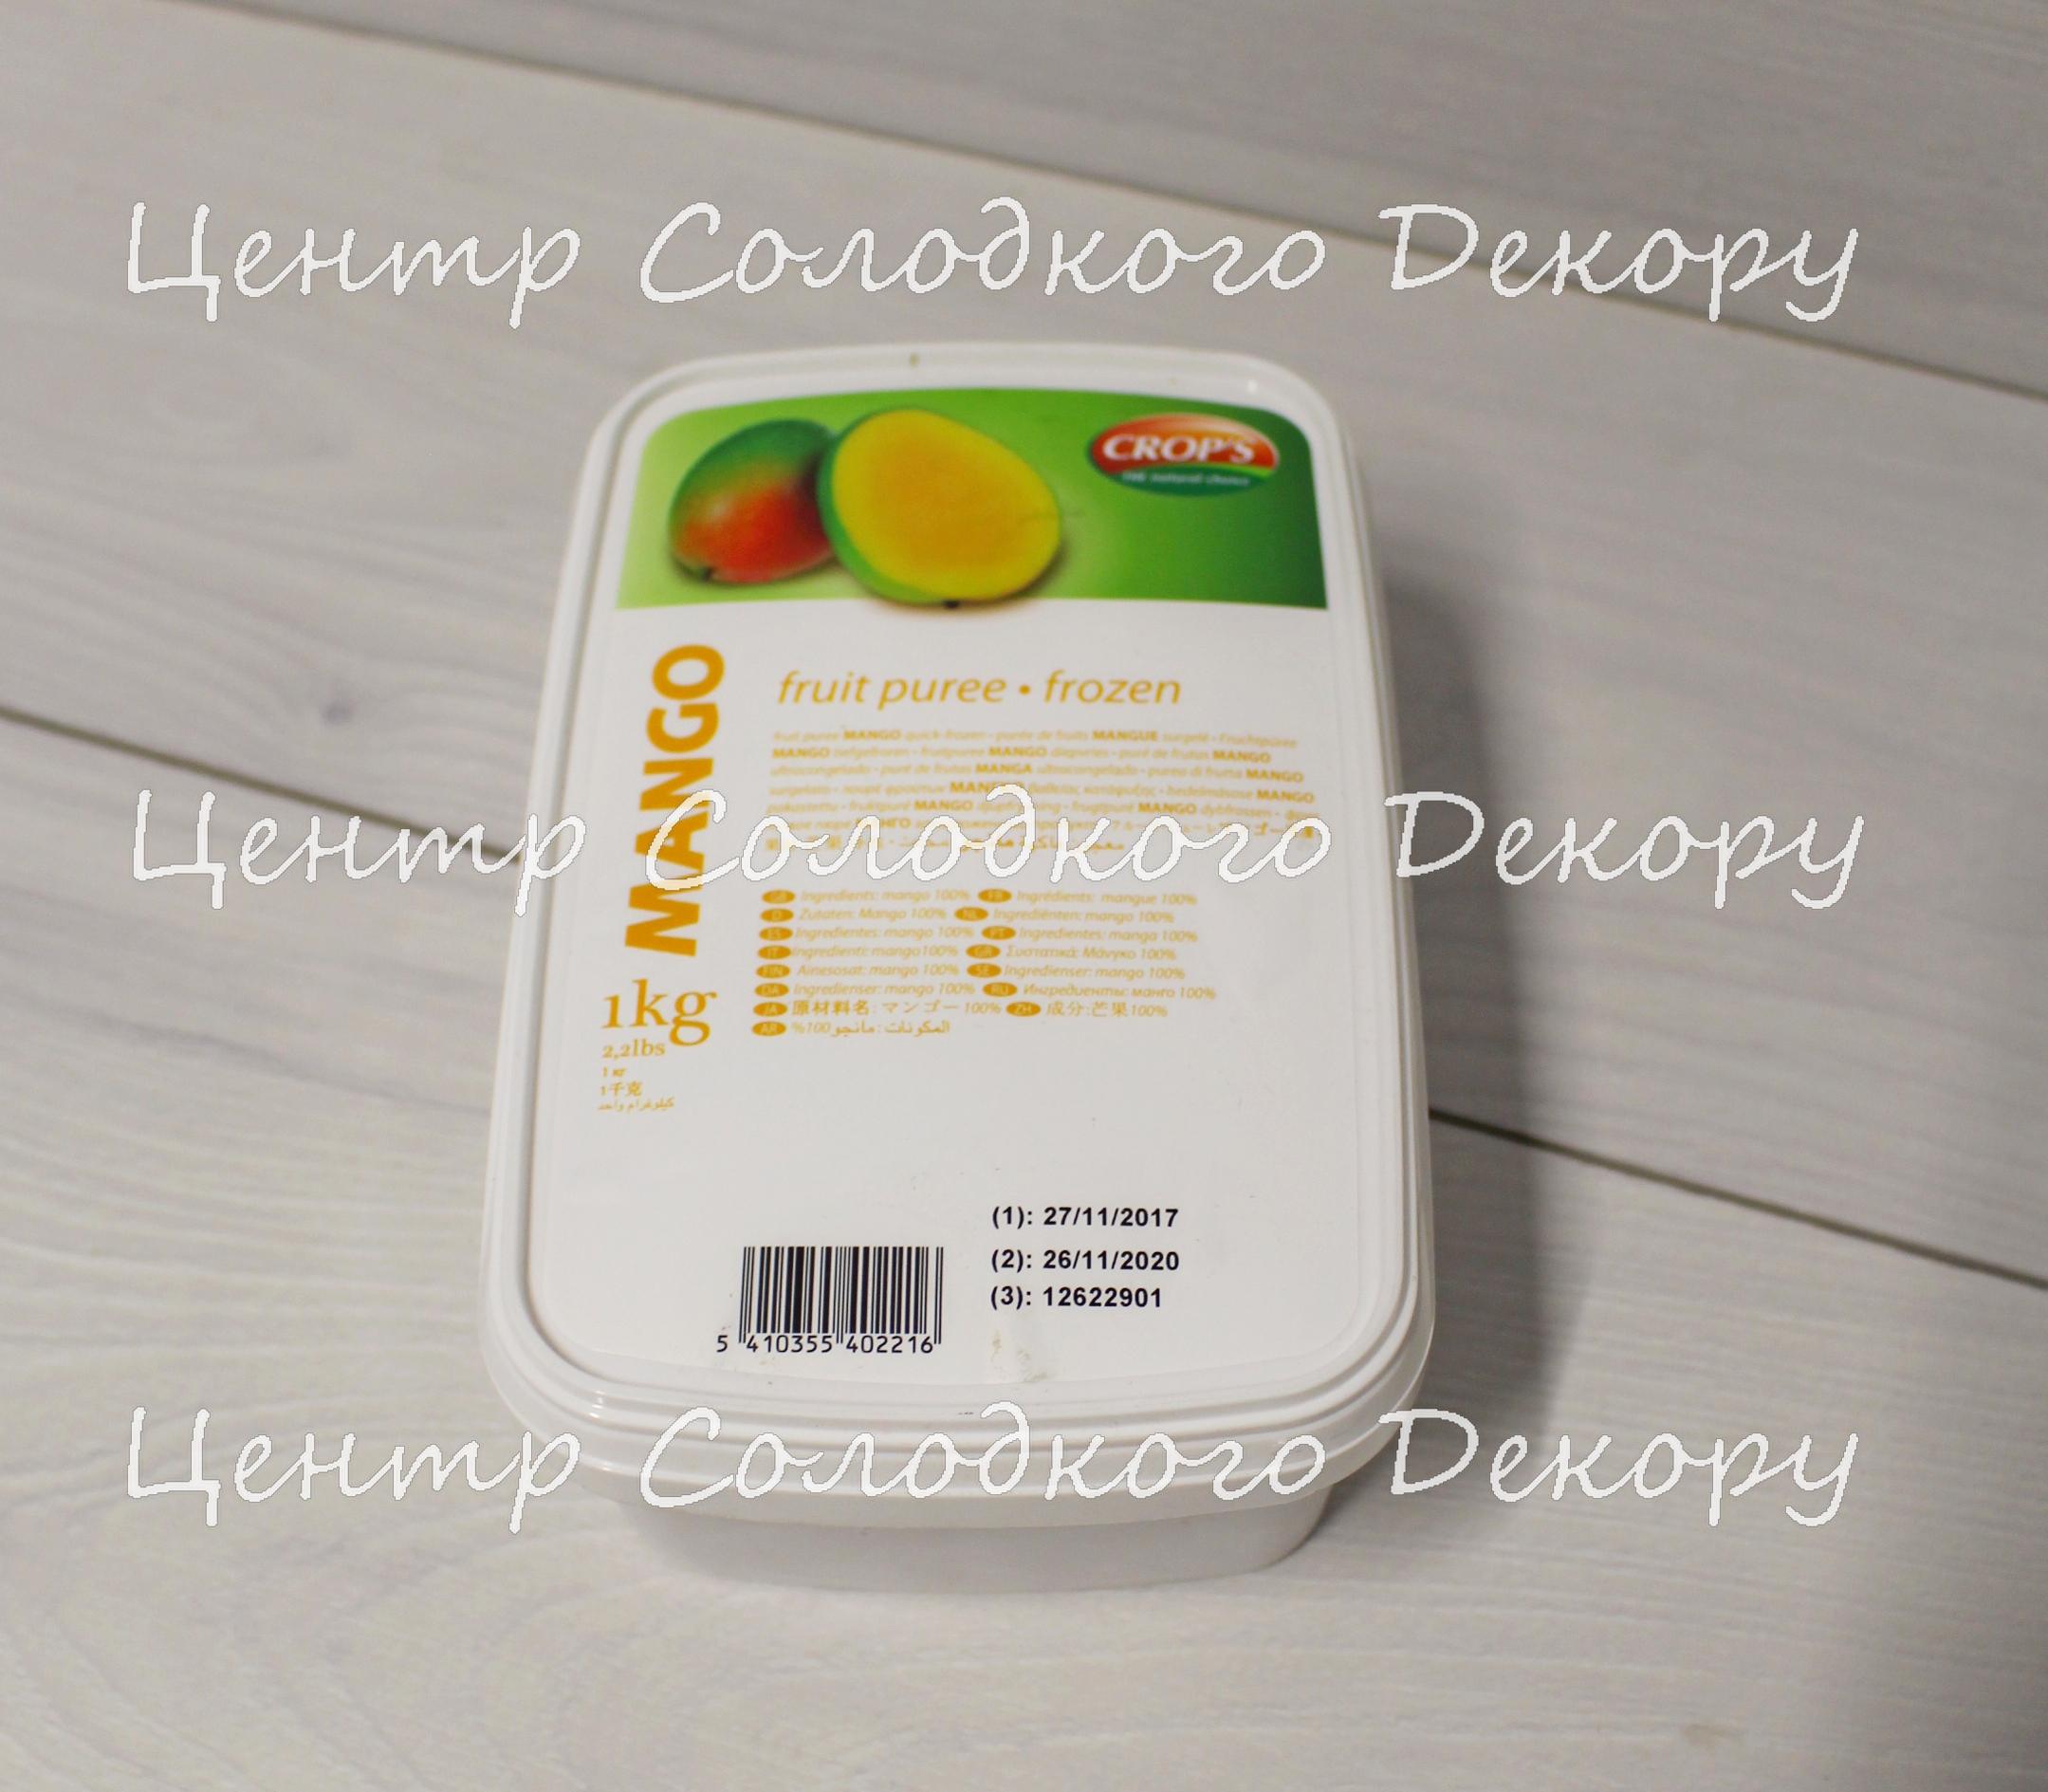 картинка Пюре з манго заморожене Crop's (Бельгія), 1 кг от магазина Центр Солодкого Декору